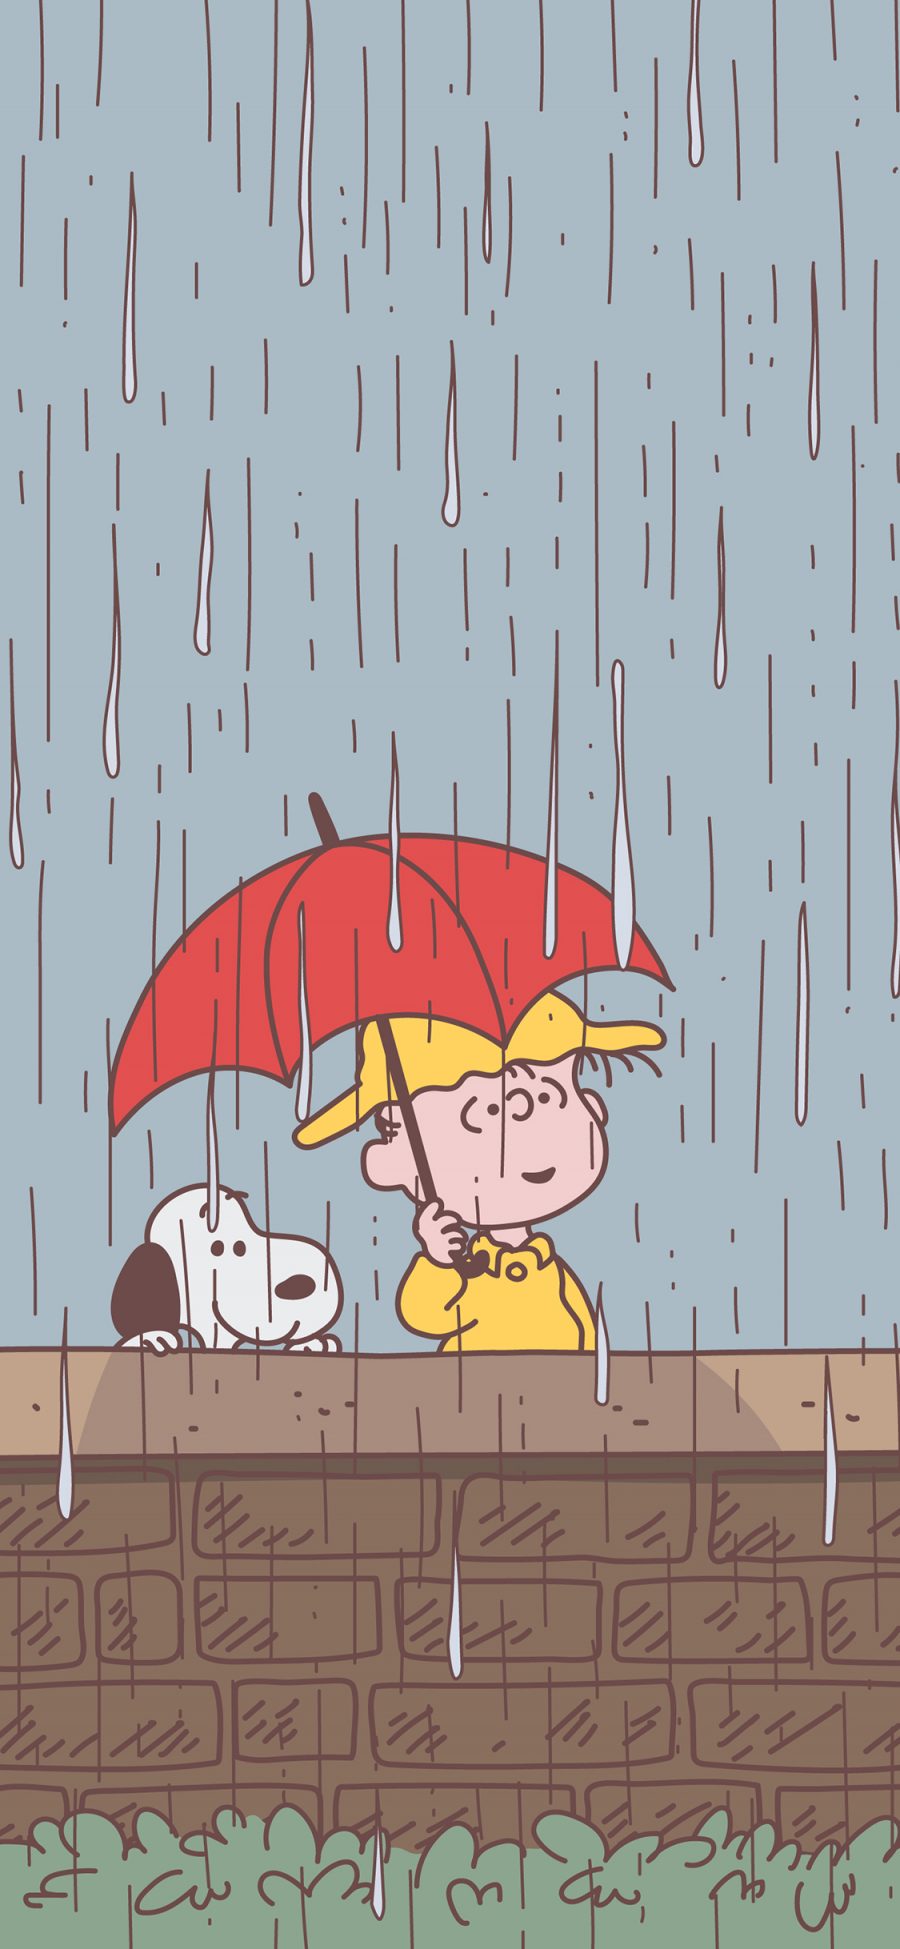 [2436×1125]史努比 查理布朗 动画 雨水 雨伞 苹果手机动漫壁纸图片